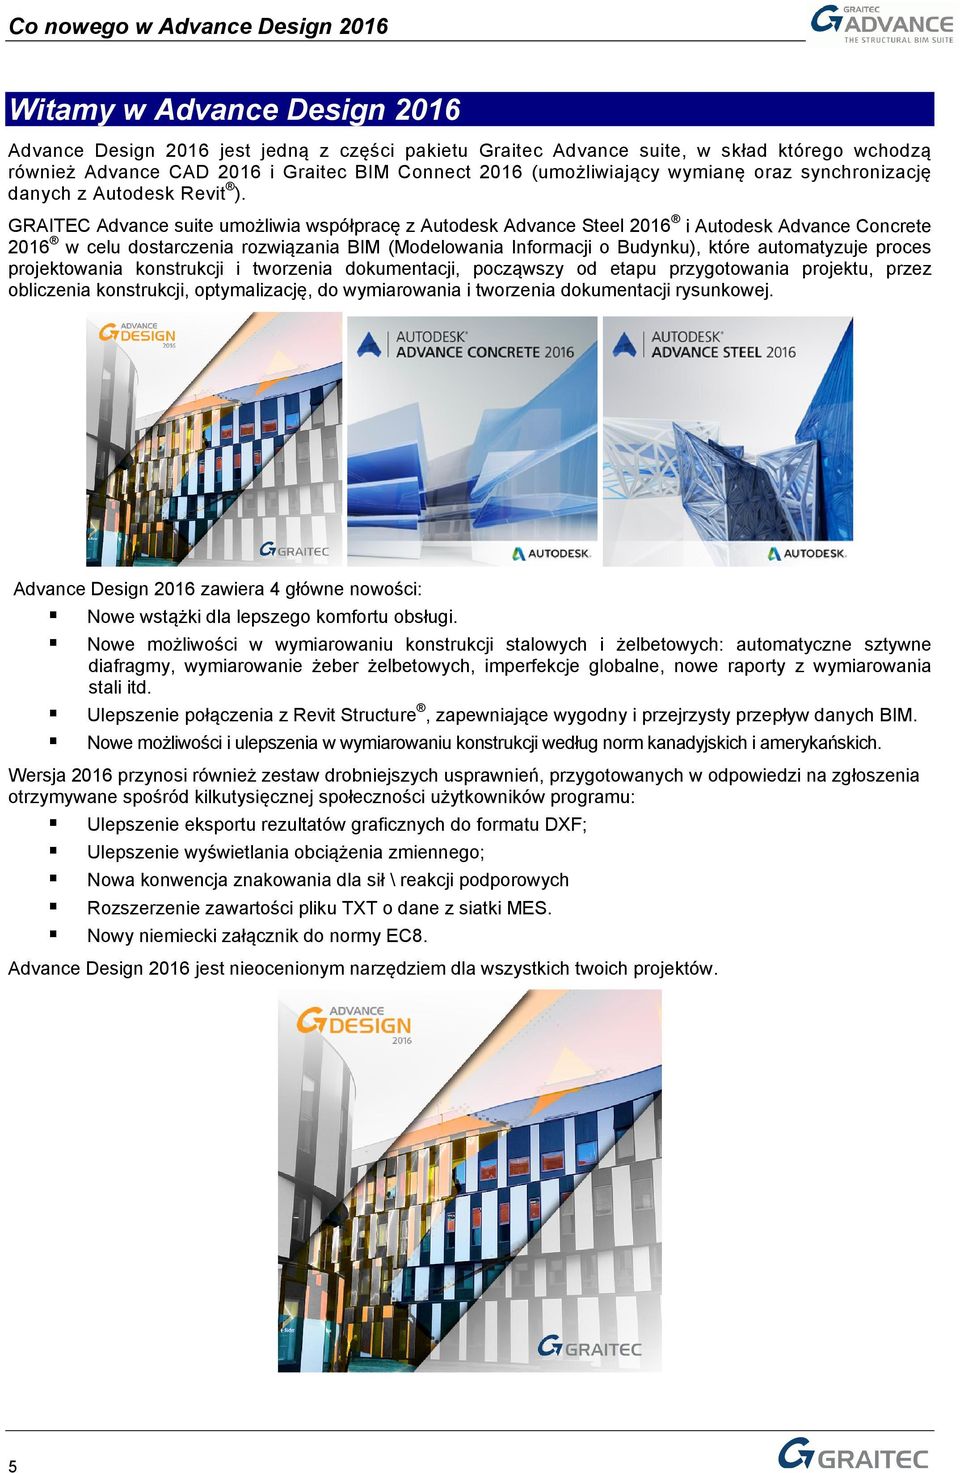 GRAITEC Advance suite umożliwia współpracę z Autodesk Advance Steel 2016 i Autodesk Advance Concrete 2016 w celu dostarczenia rozwiązania BIM (Modelowania Informacji o Budynku), które automatyzuje